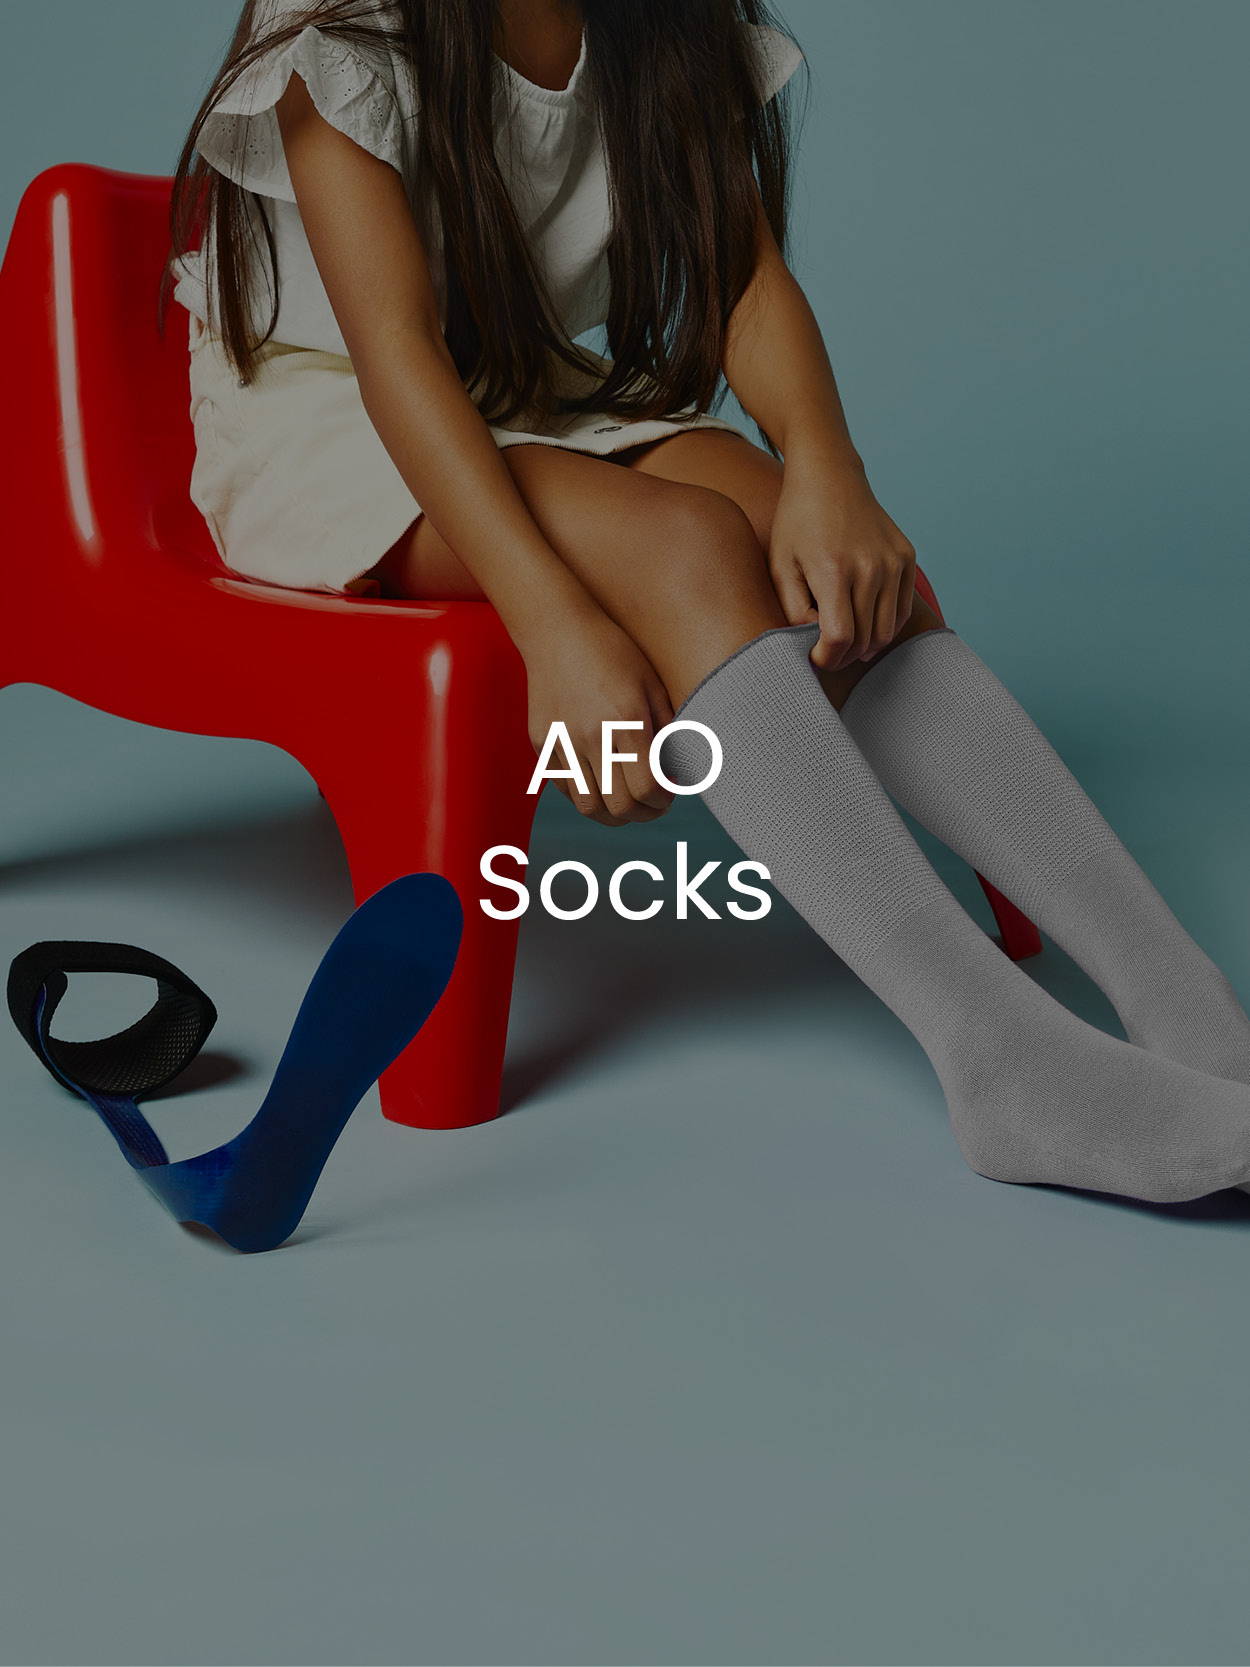 AFO Socks